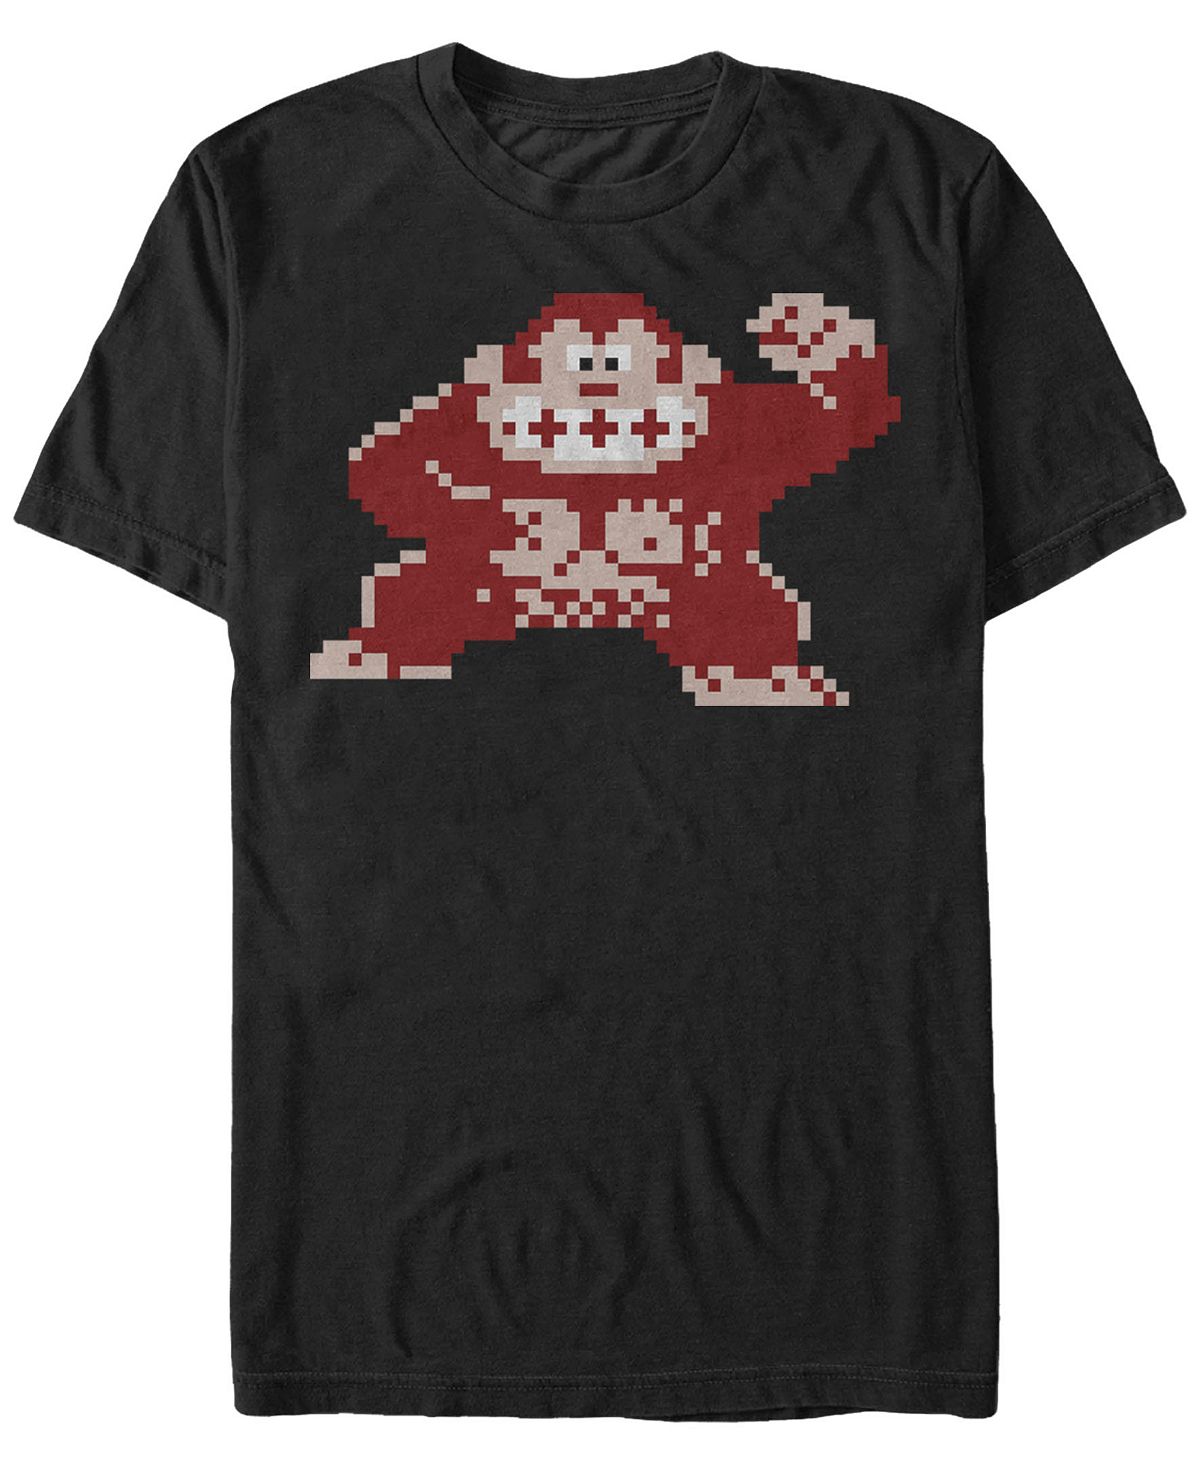 цена Мужская футболка с коротким рукавом donkey kong classic с пиксельным изображением kong nintendo Fifth Sun, черный